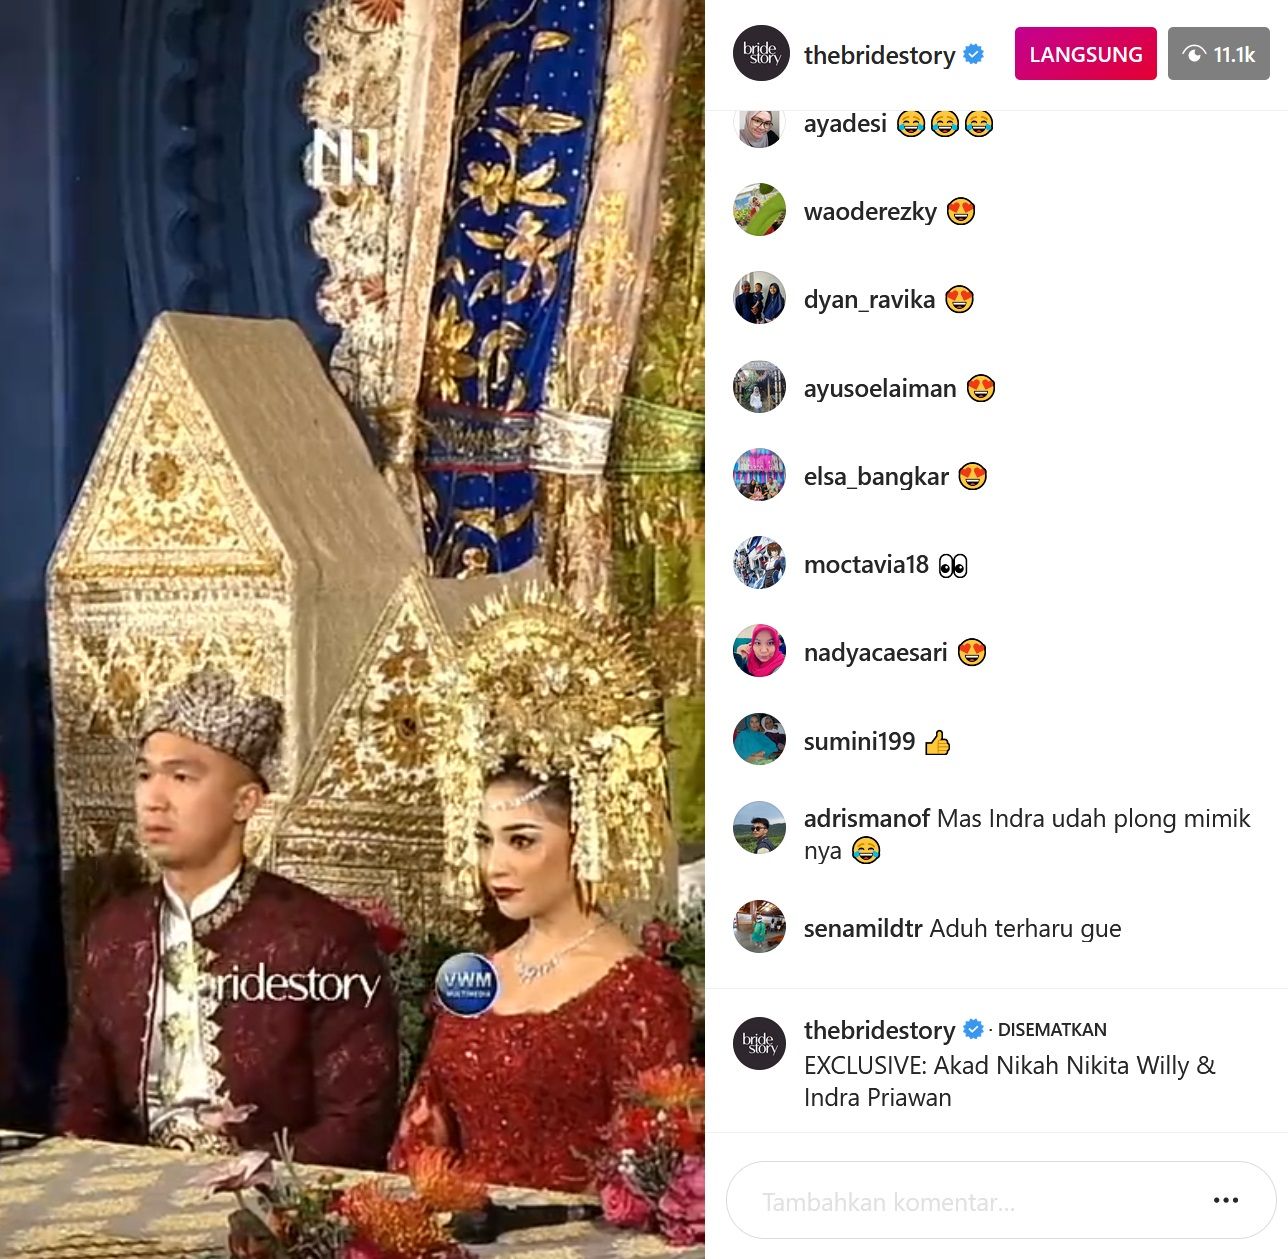 Momen sakral pernikahan Nikita Willy dan Indra Priawan yang terekam dalam Instagram Bride Story.